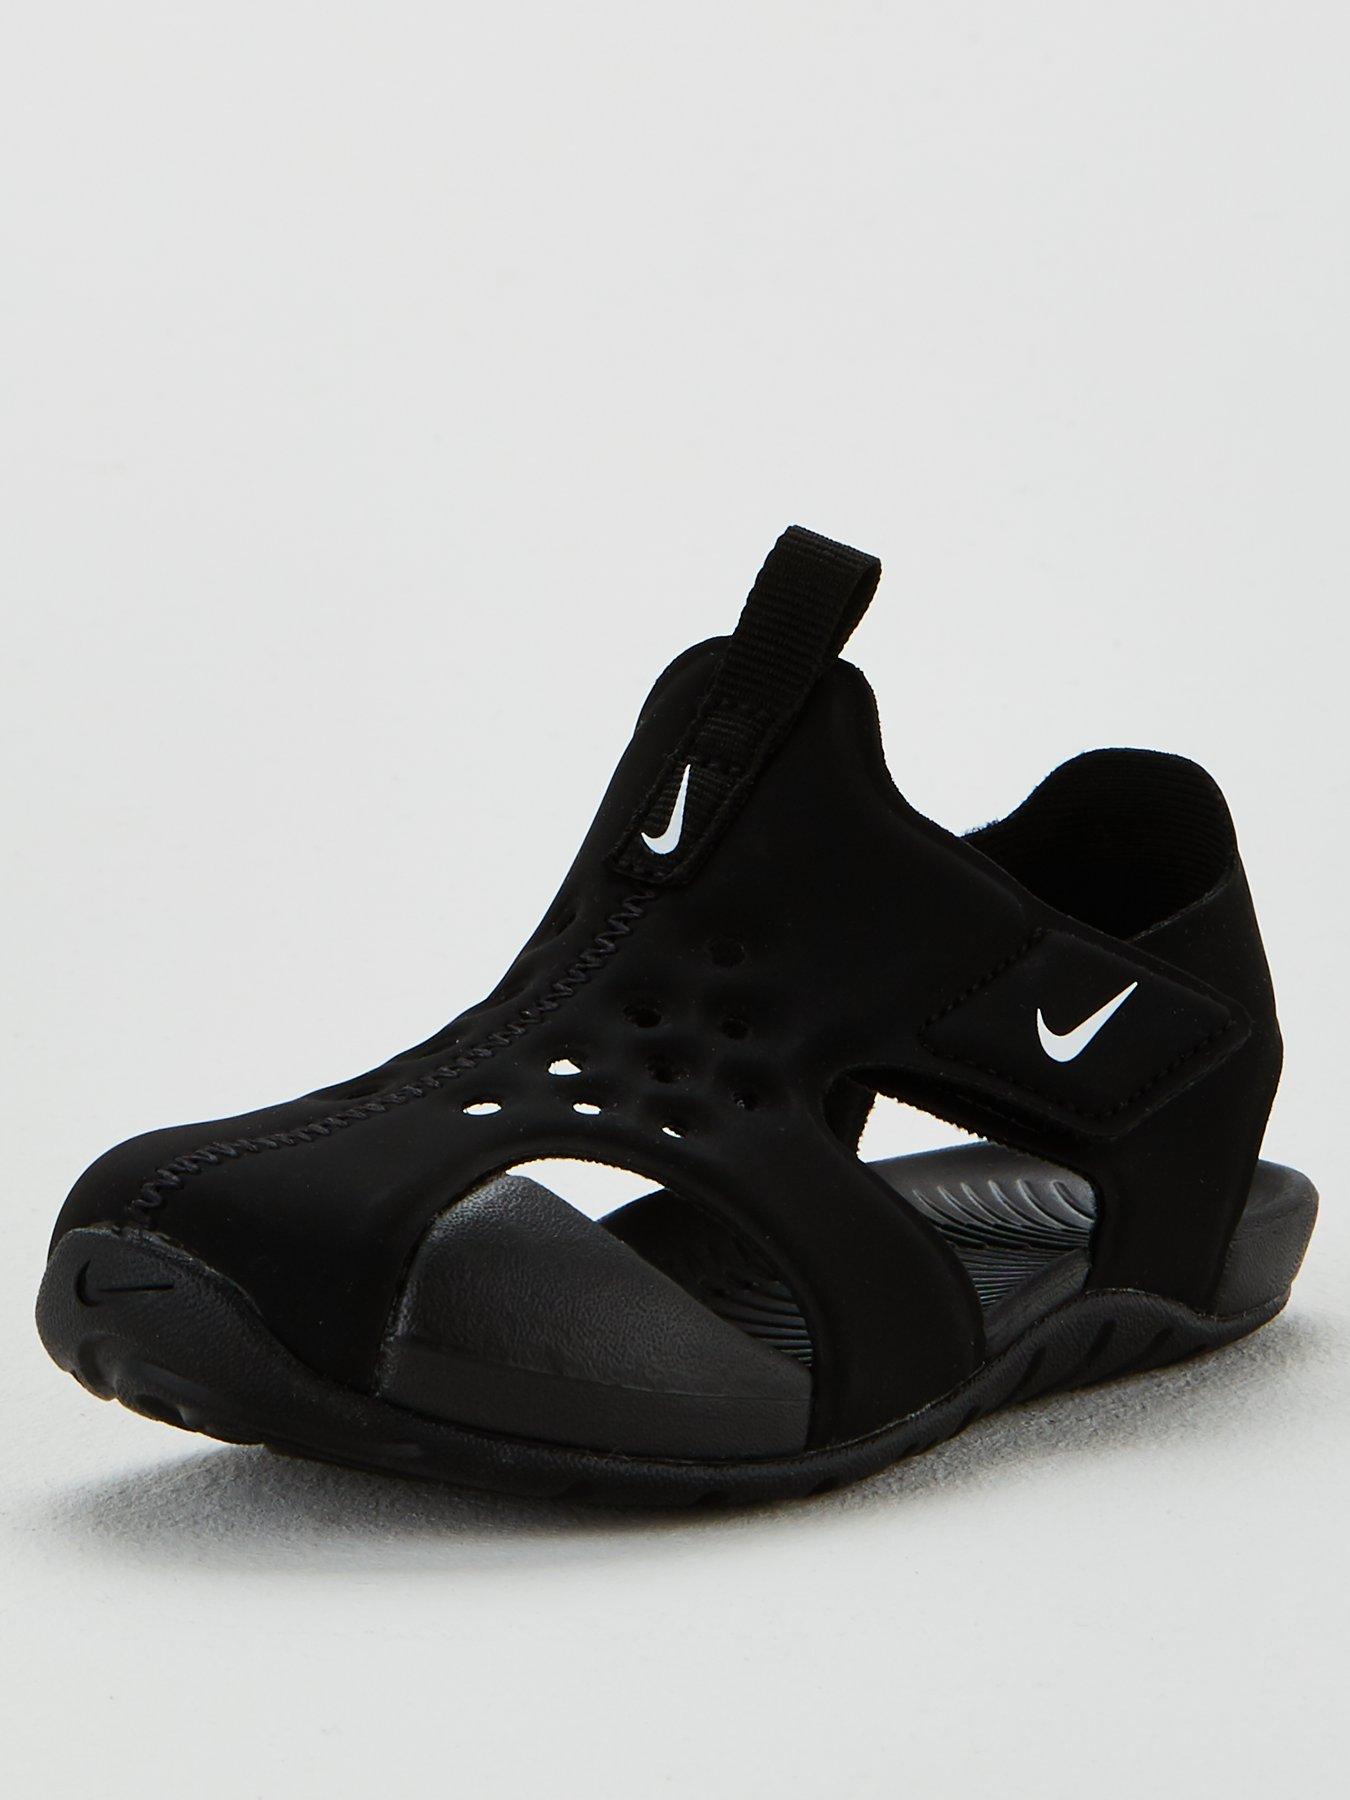 Sandals \u0026 flip flops | Shoes \u0026 boots 